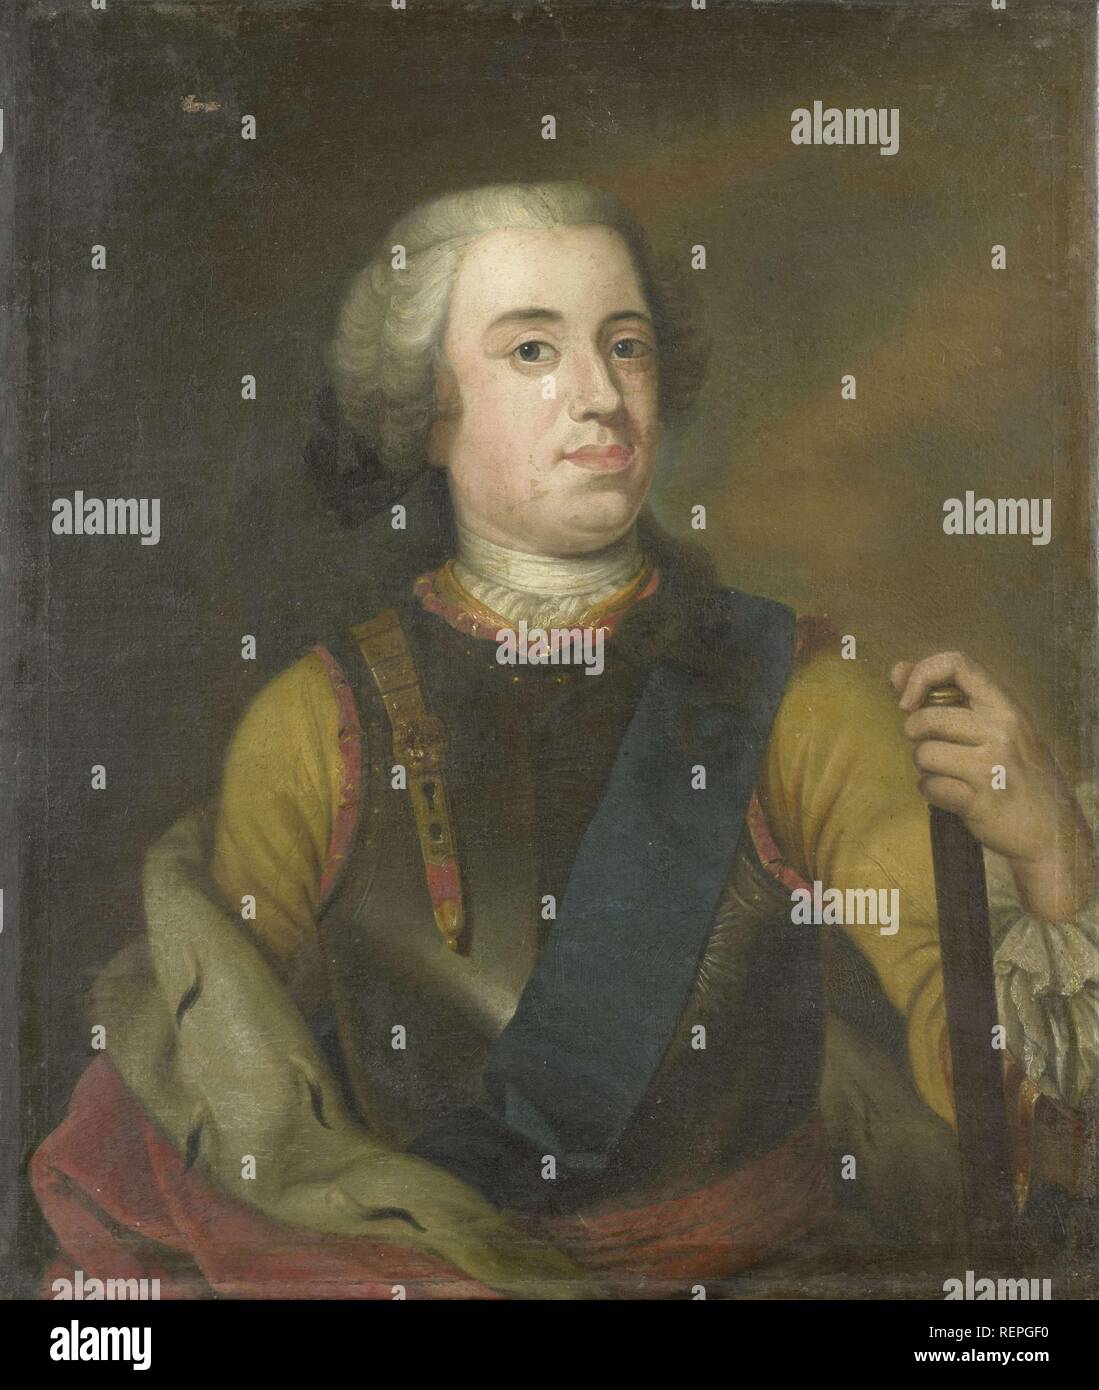 Portrait of William IV, Prince of Orange. Dating: c. 1745. Place: Holland. Measurements: h 81 cm × w 69.5 cm × t 3.5 cm. Museum: Rijksmuseum, Amsterdam. Stock Photo